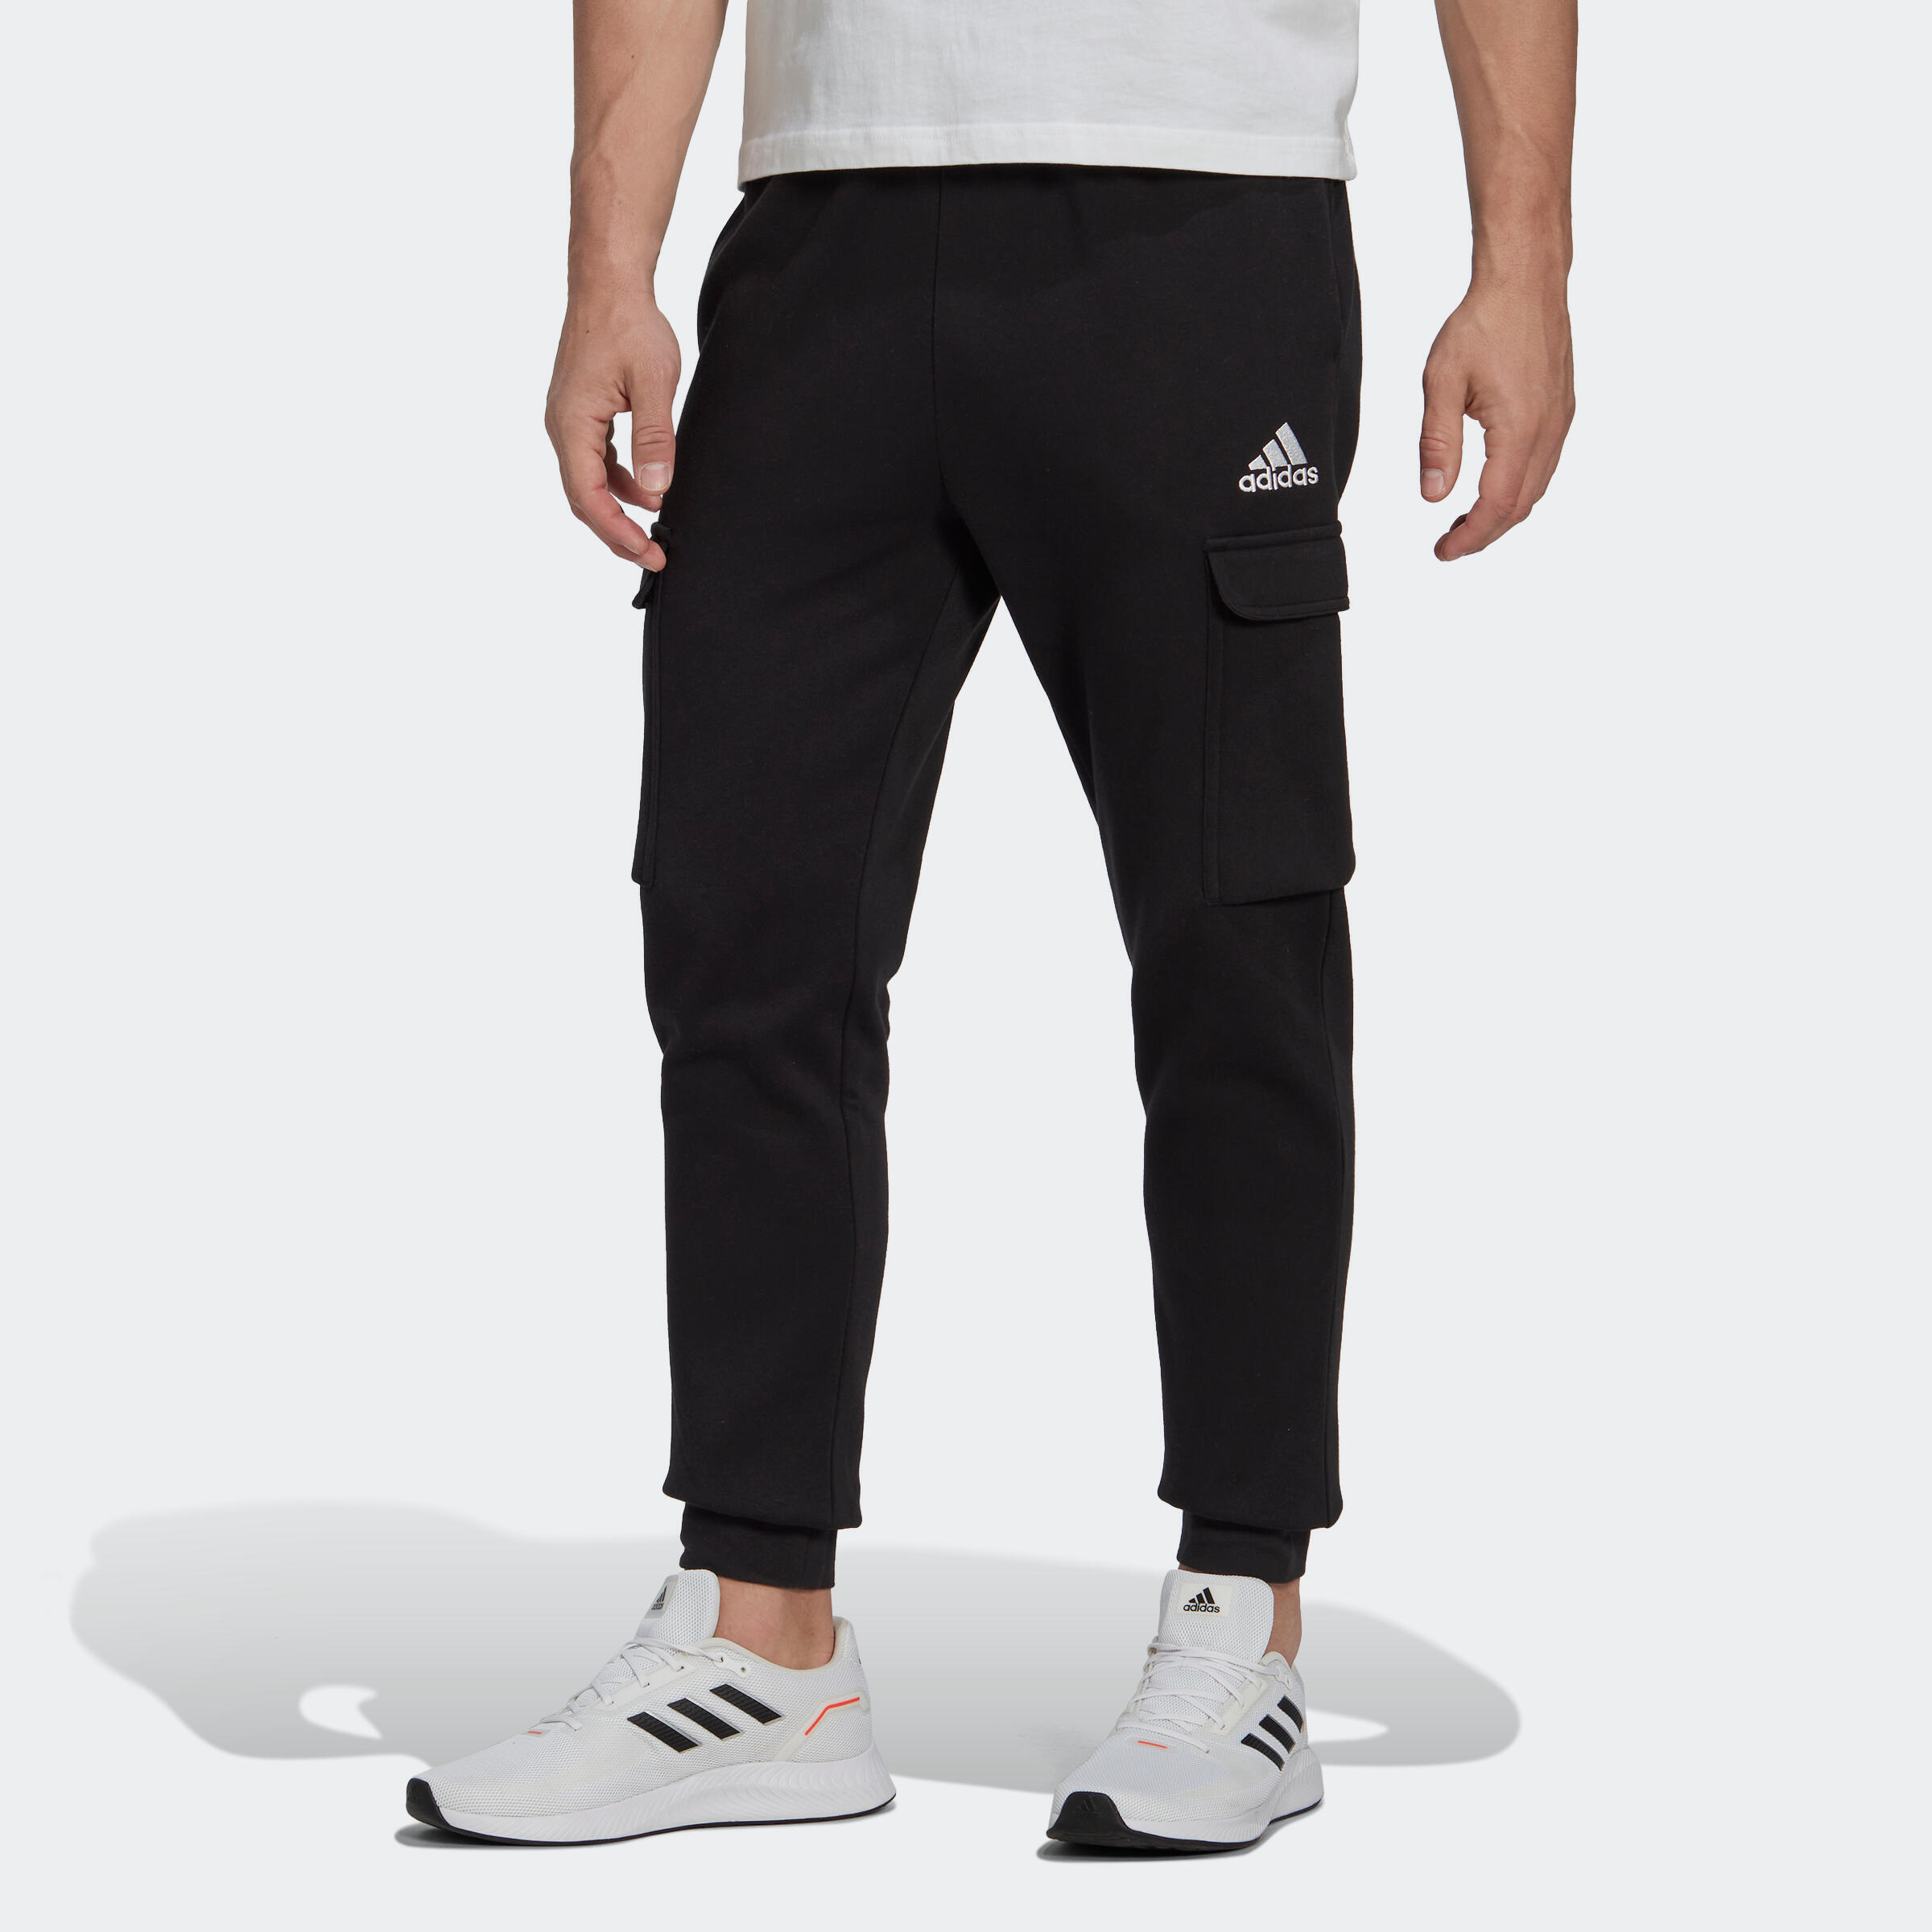 Спортивные штаны Adidas Fitness Soft Training мужские черные – купить по выгодным ценам с доставкой из-за рубежа через сервис «CDEK.Shopping»